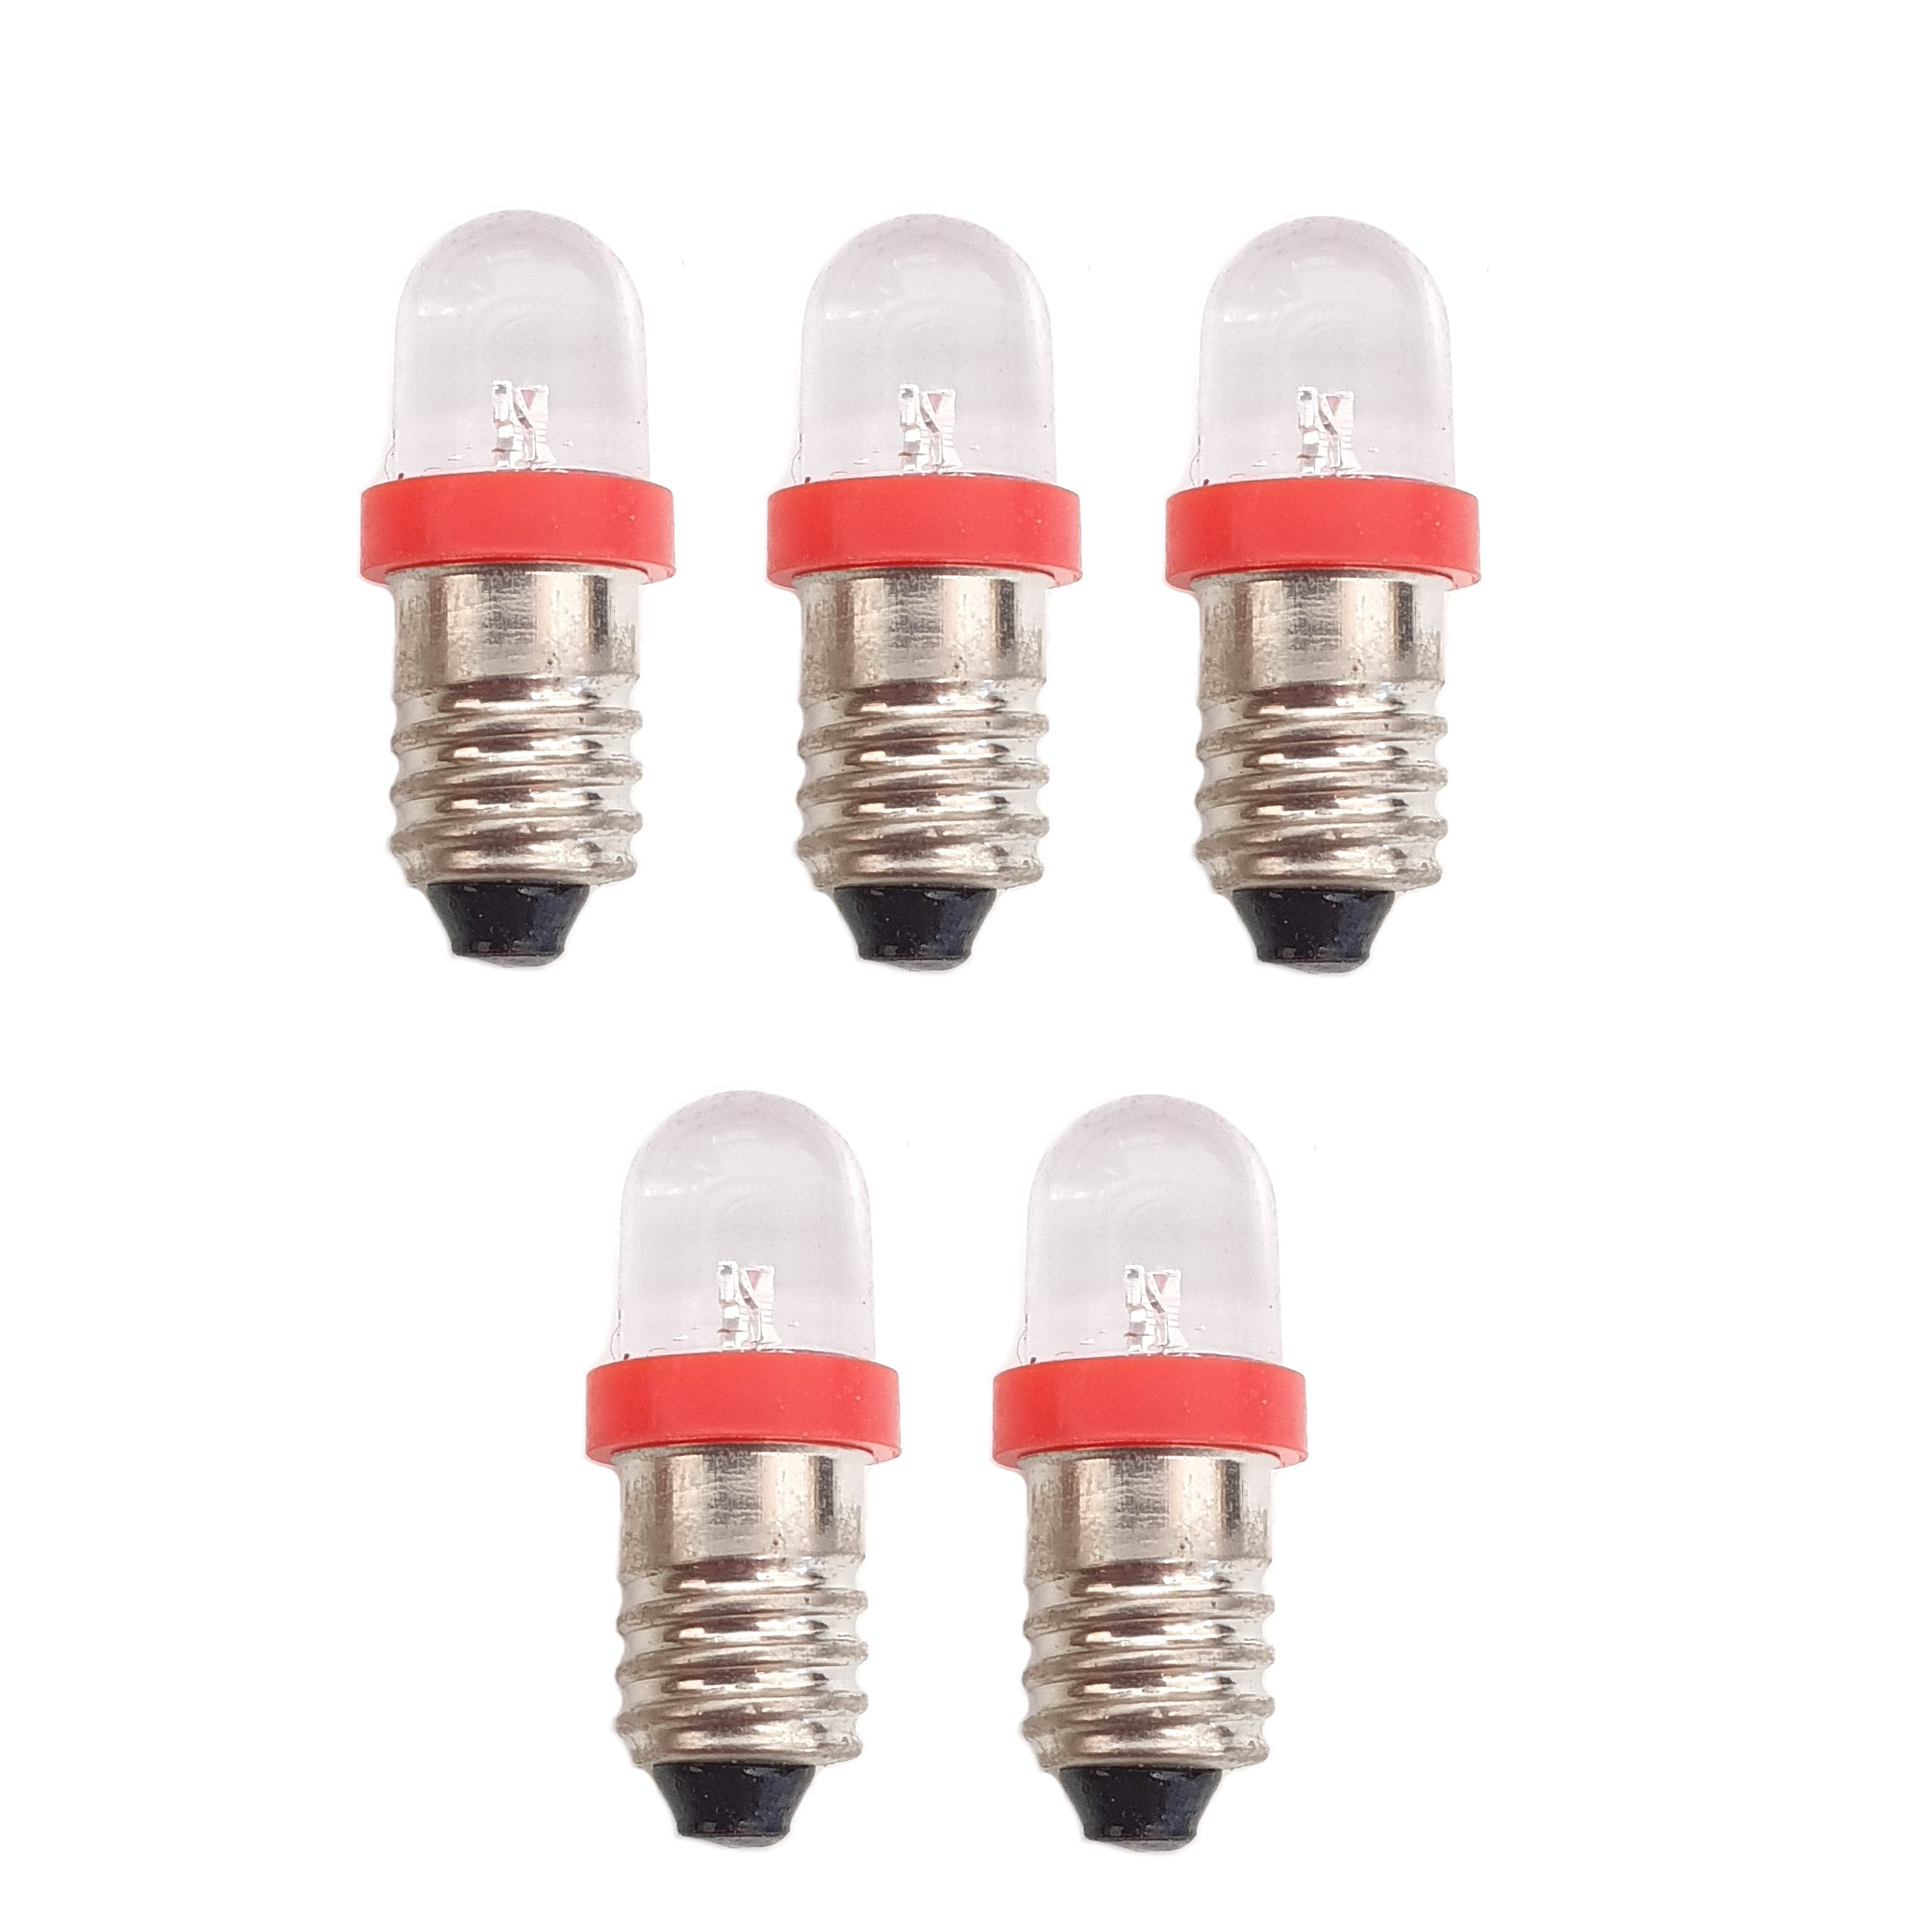 5 x 12V MES E10 LED Lamp Bulb 10mm Diameter - Red